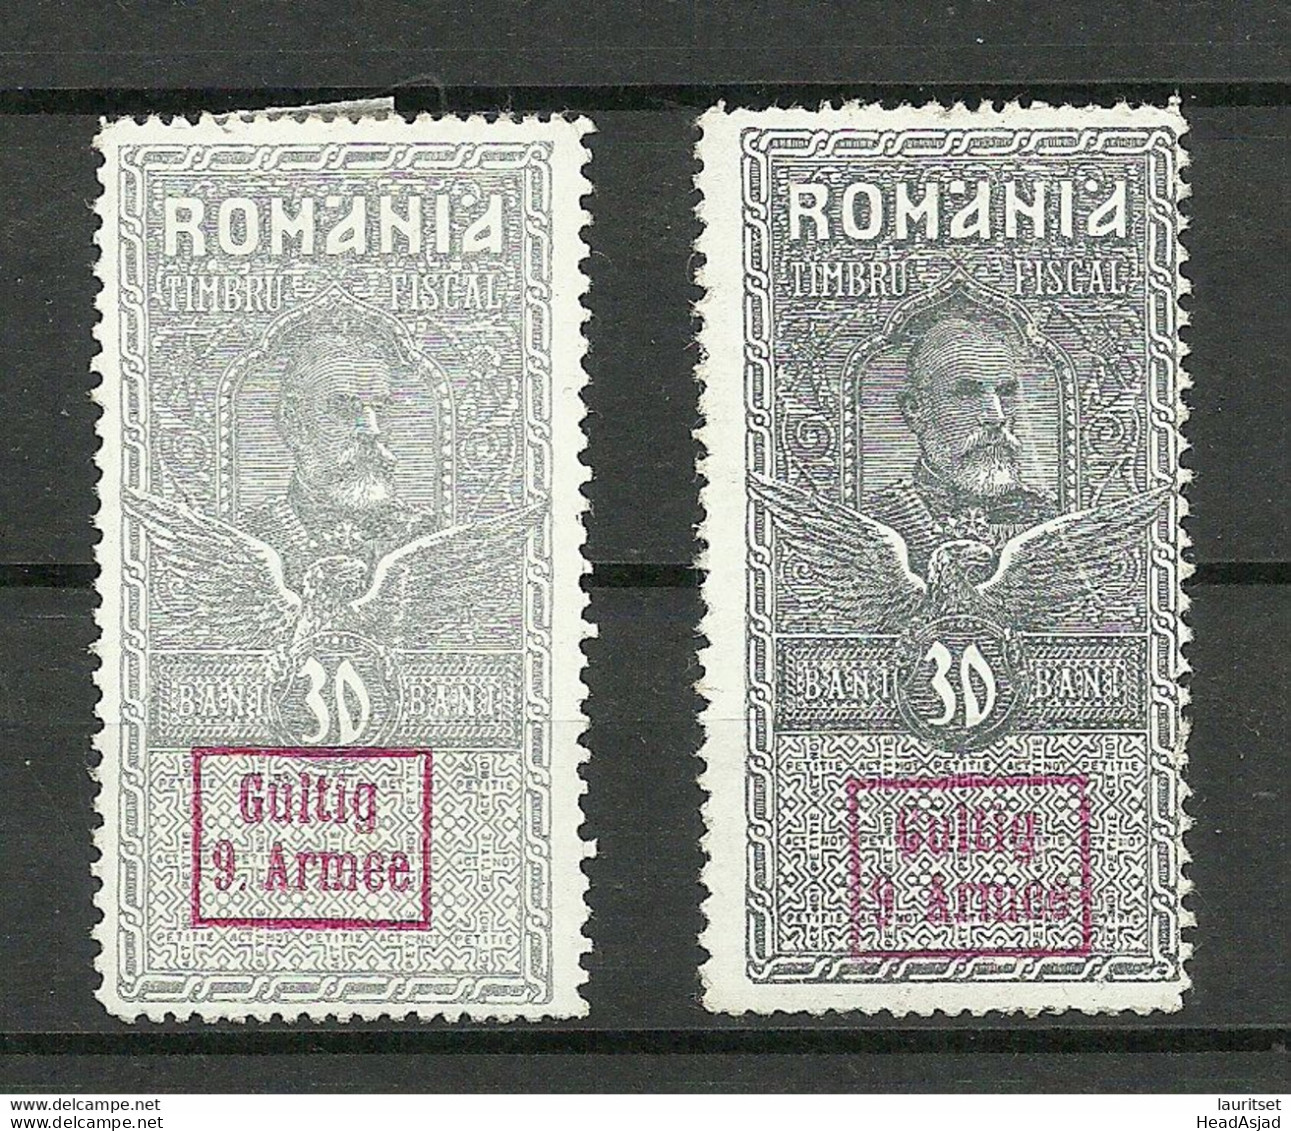 Germany Deutsche Militärverwaltung Romania Rumänien 1917 * Stempelmarke Fischal Tax OPT Gültig 9. Armee - Color Shades - Occupation 1914-18